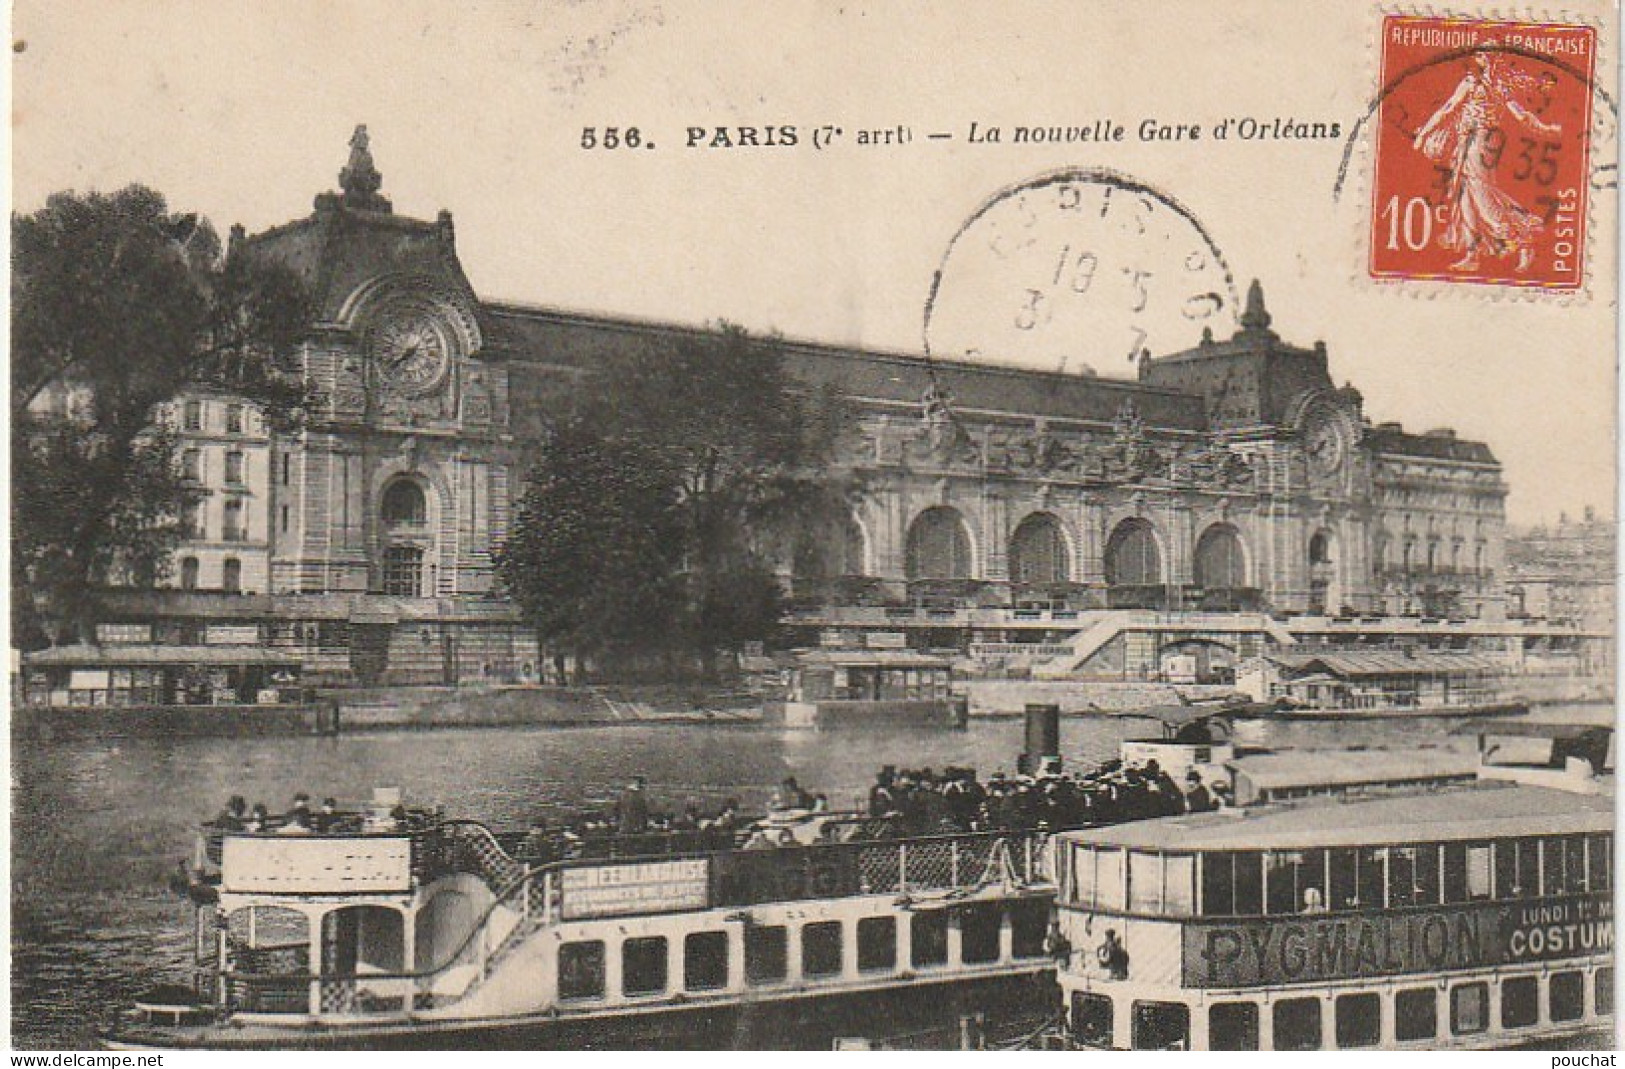 JA 4 - (75) PARIS - LA NOUVELLE GARE D' ORLEANS - BATEAUX PROMENADES - 2 SCANS - Stations, Underground